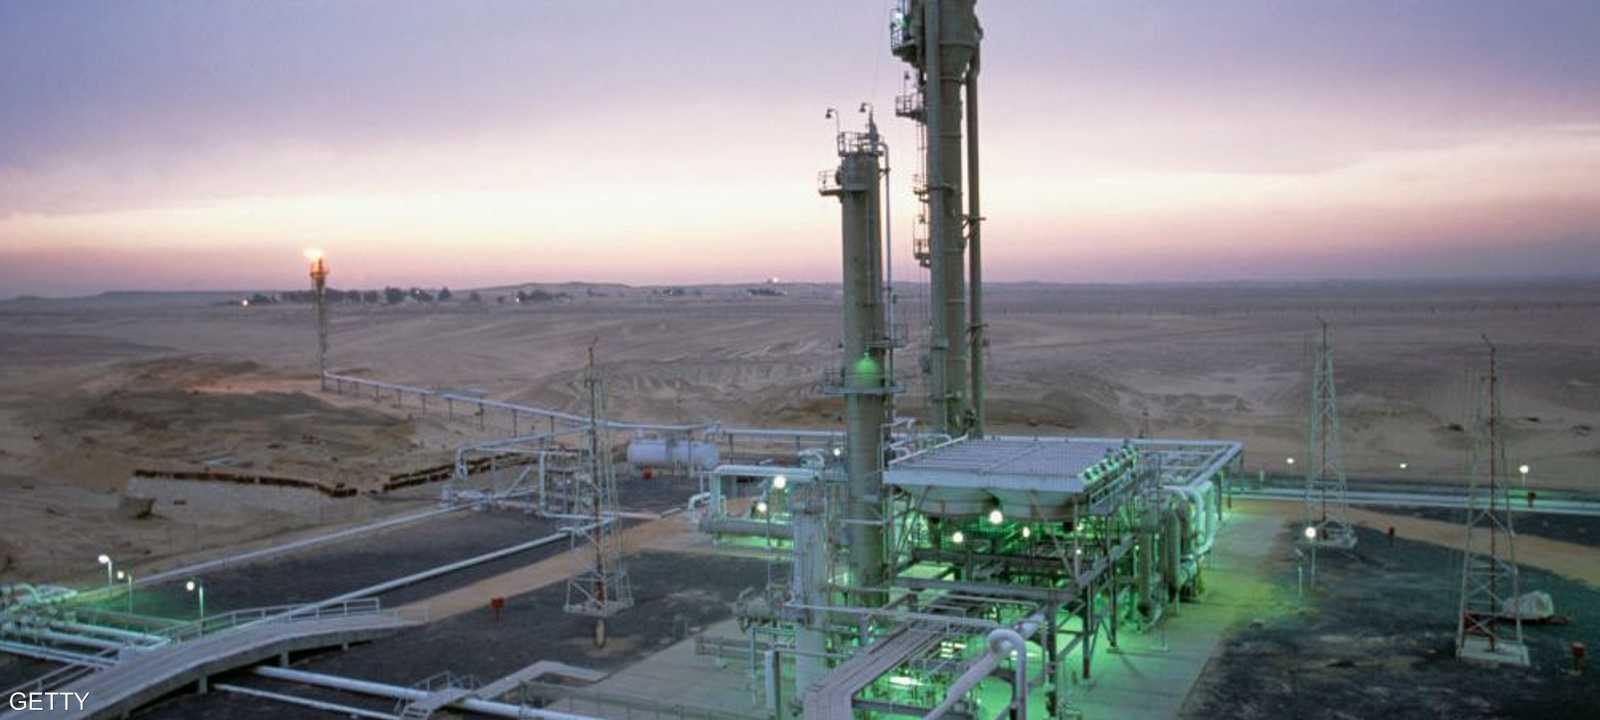 منشأة لتكرير الغاز في صحراء مصر الغربية - أرشيف